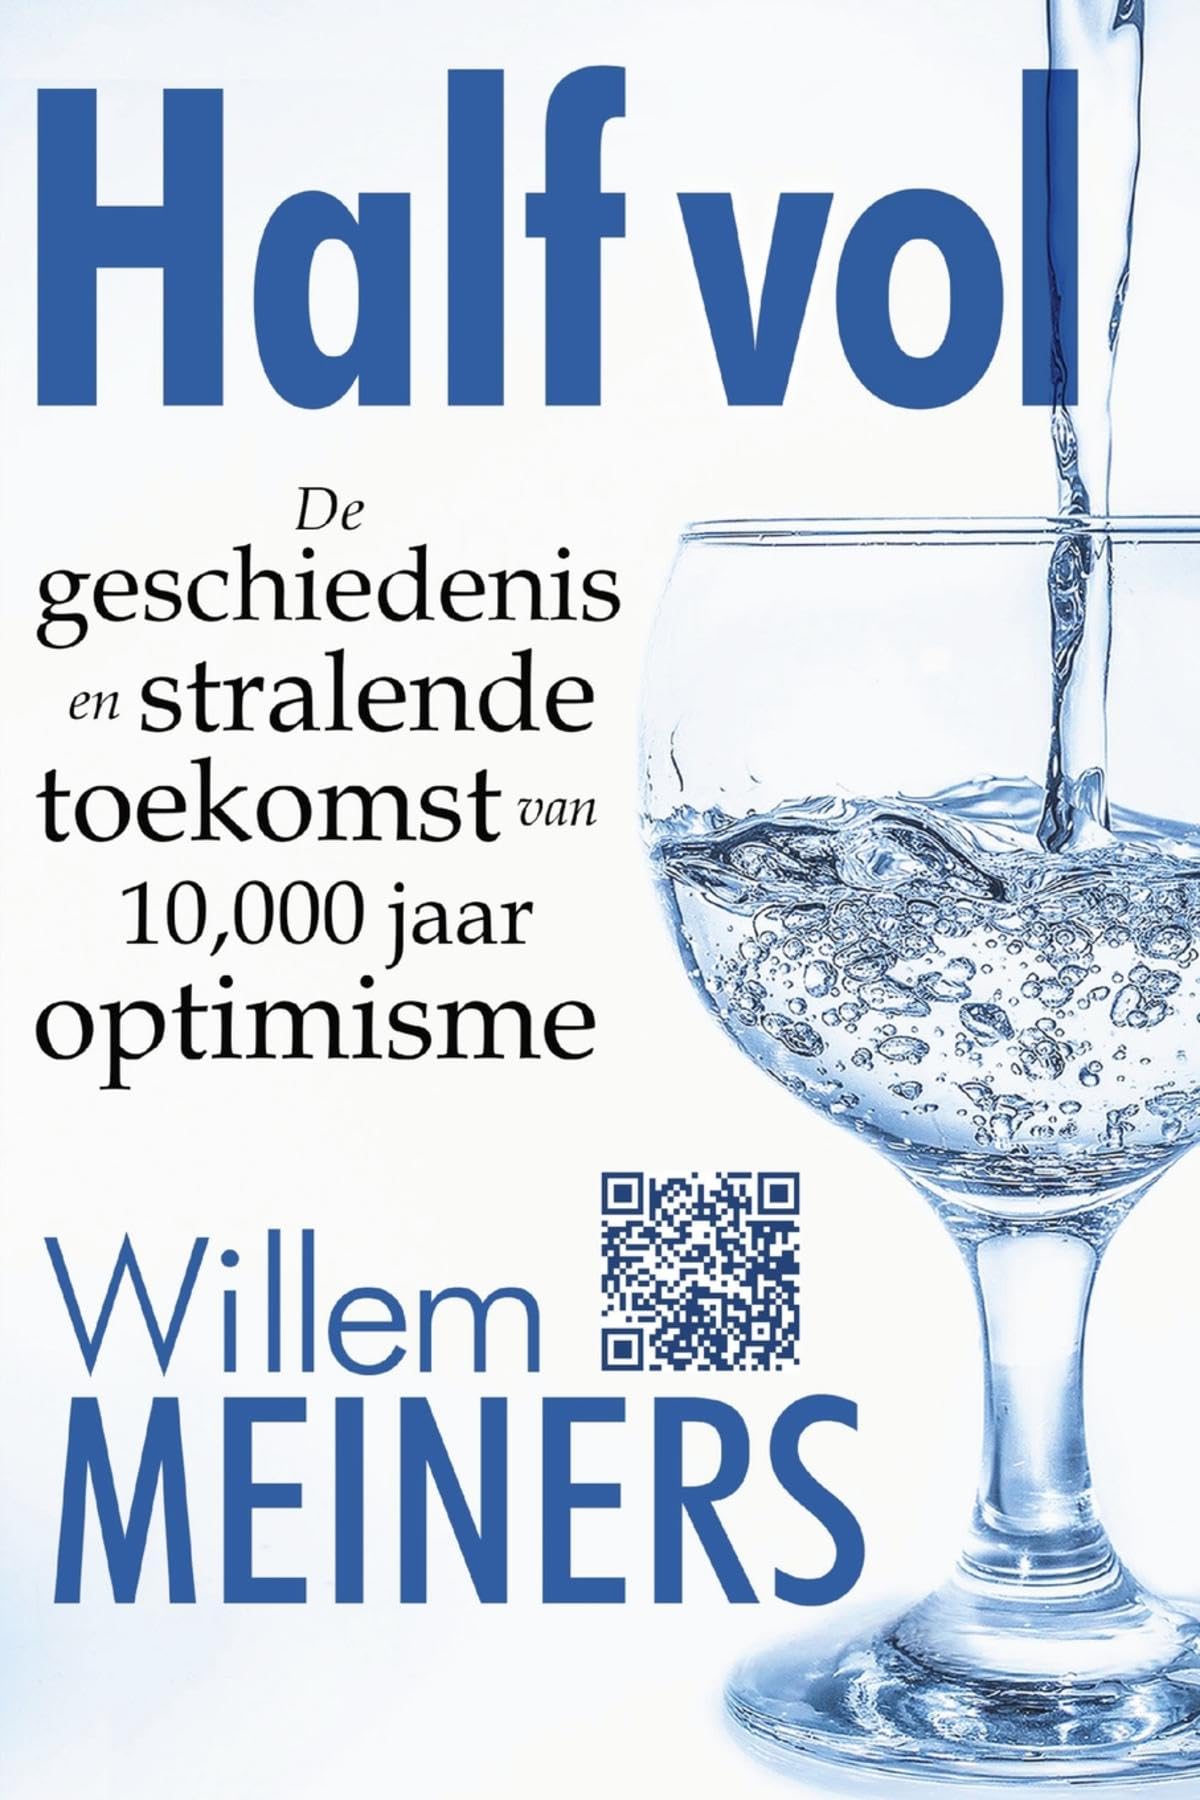 Half vol: De geschiedenis en stralende toekomst van 10.000 jaar optimisme (Dutch Edition)